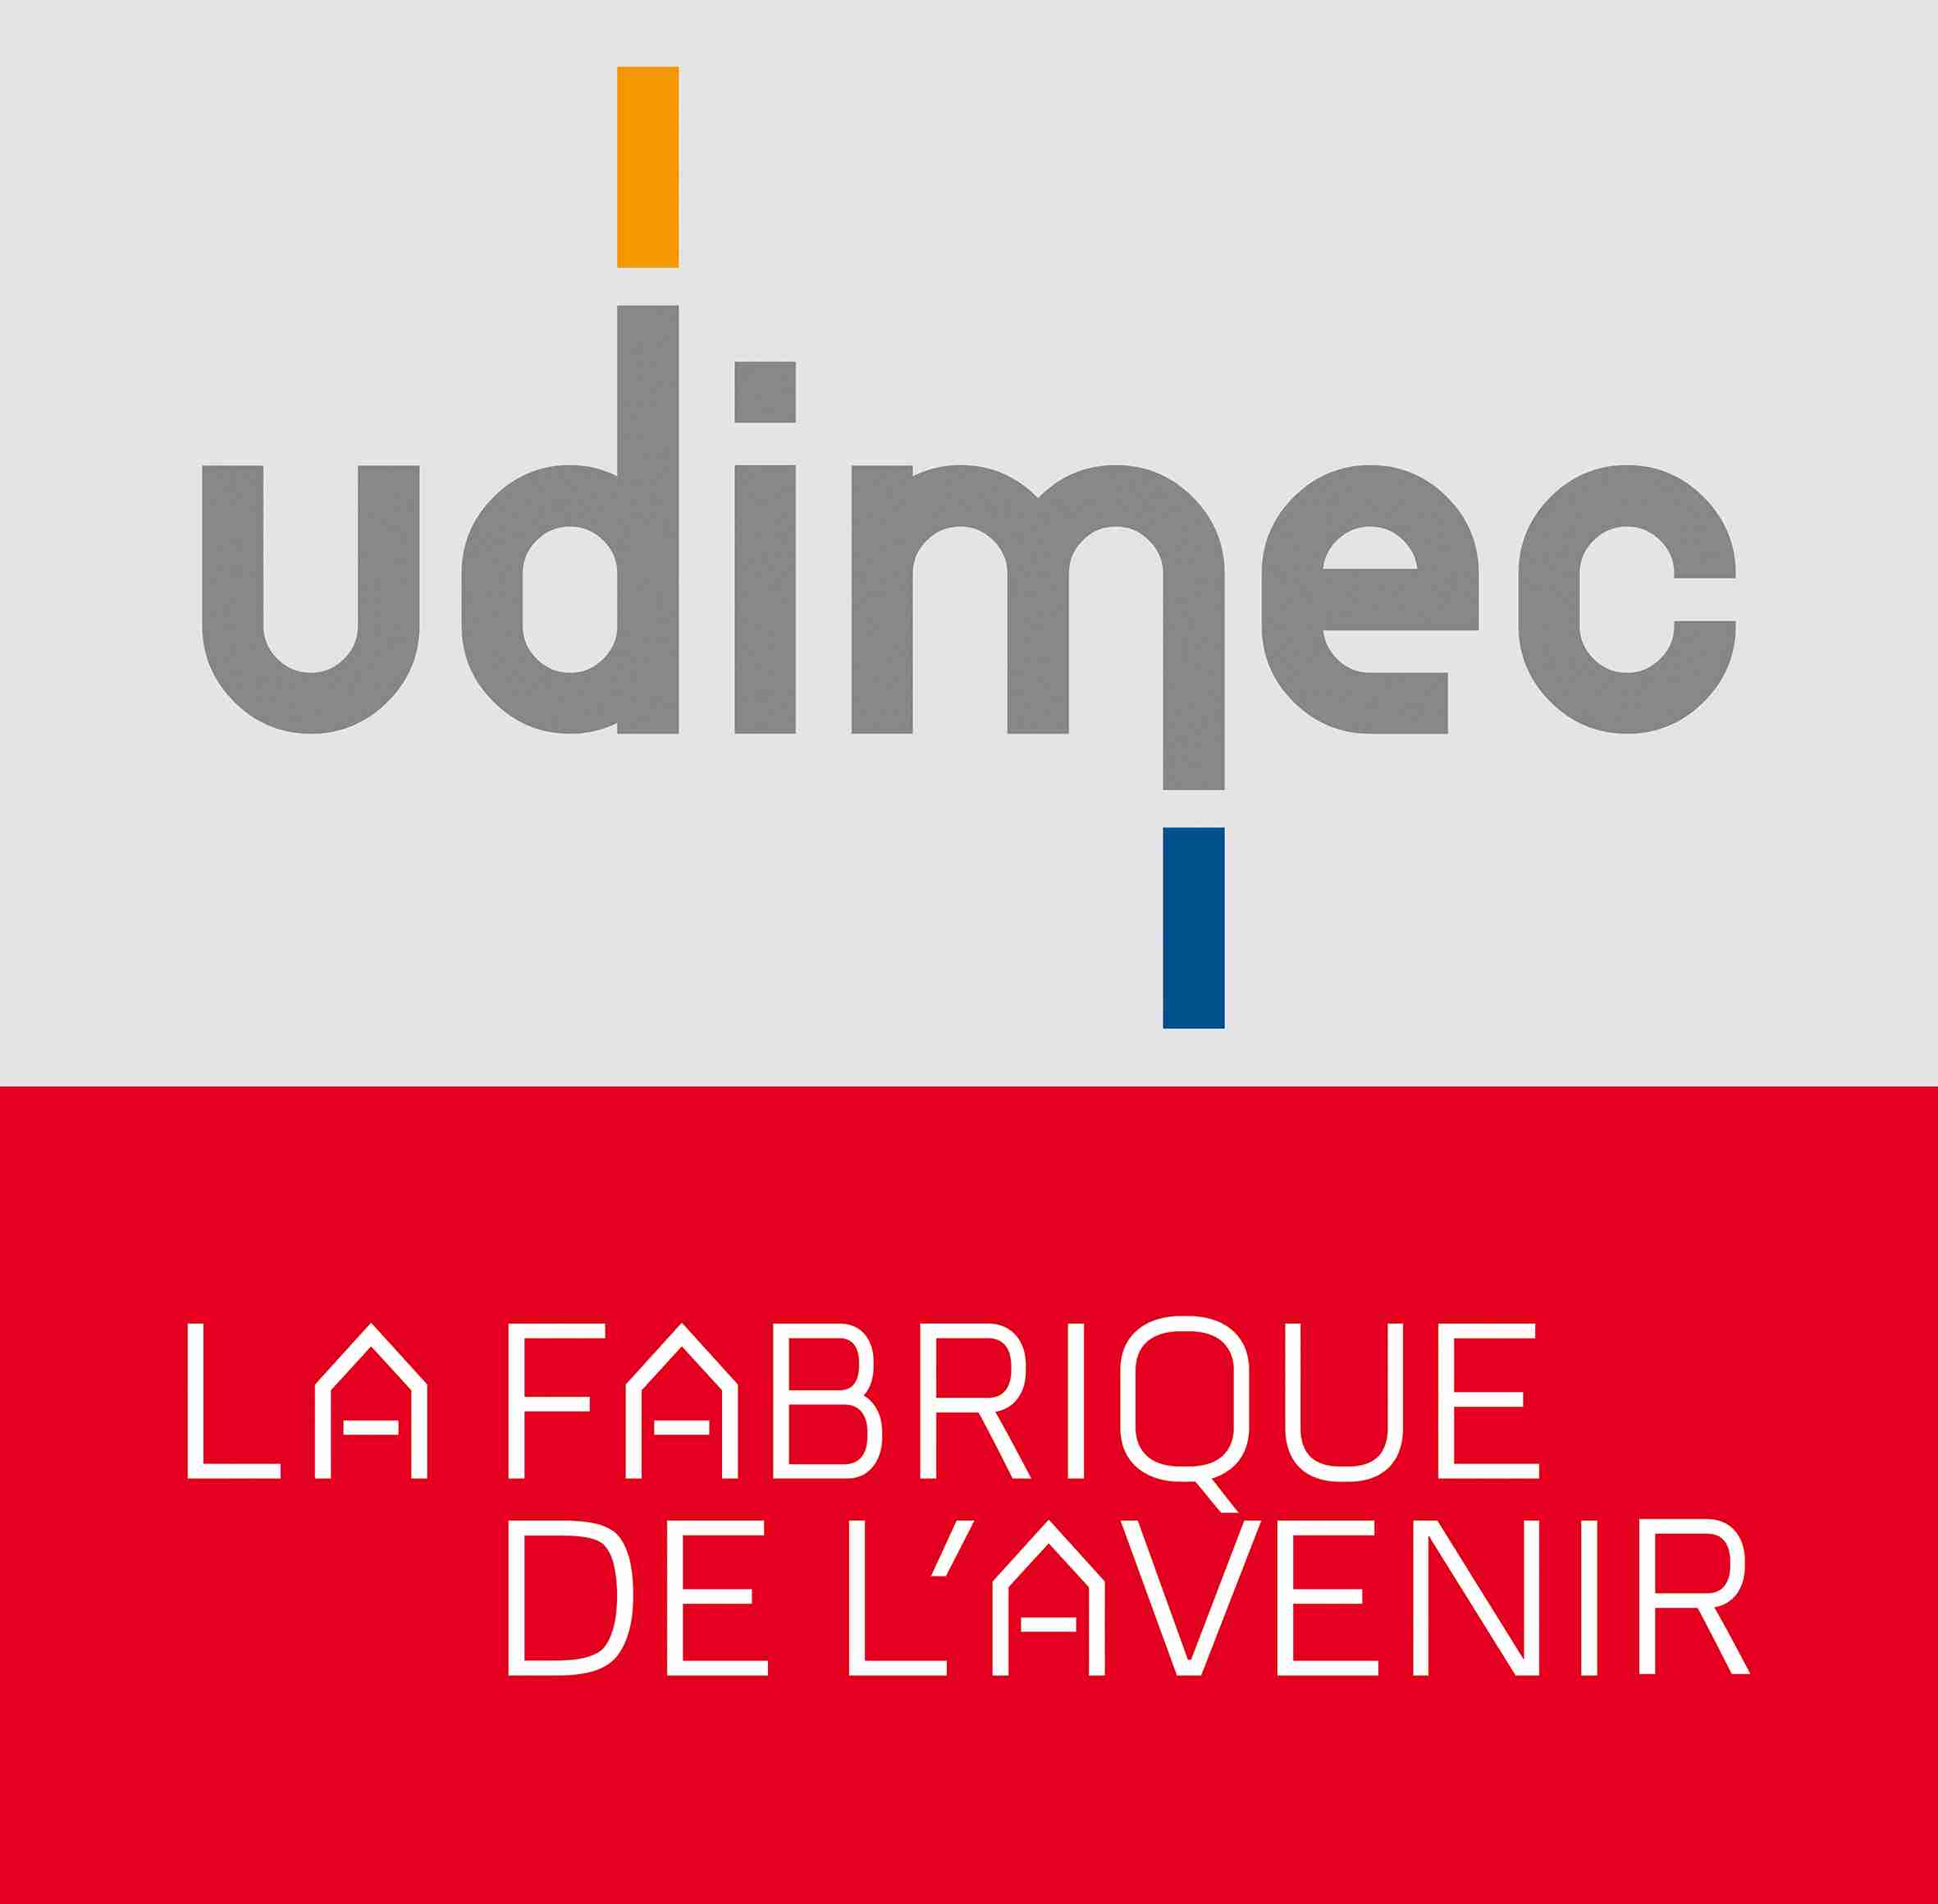 Udimec - La fabrique de l'avenir